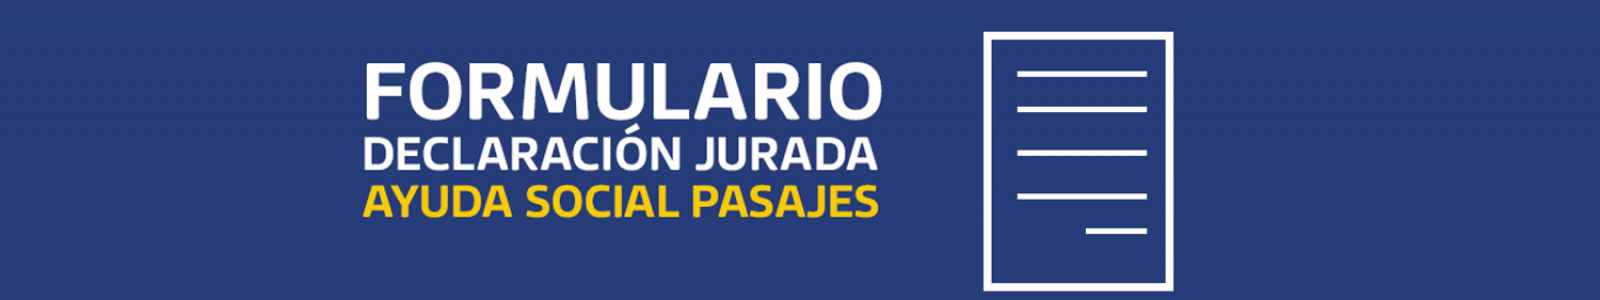 DECLARACION-JURADA-PASAJES 5